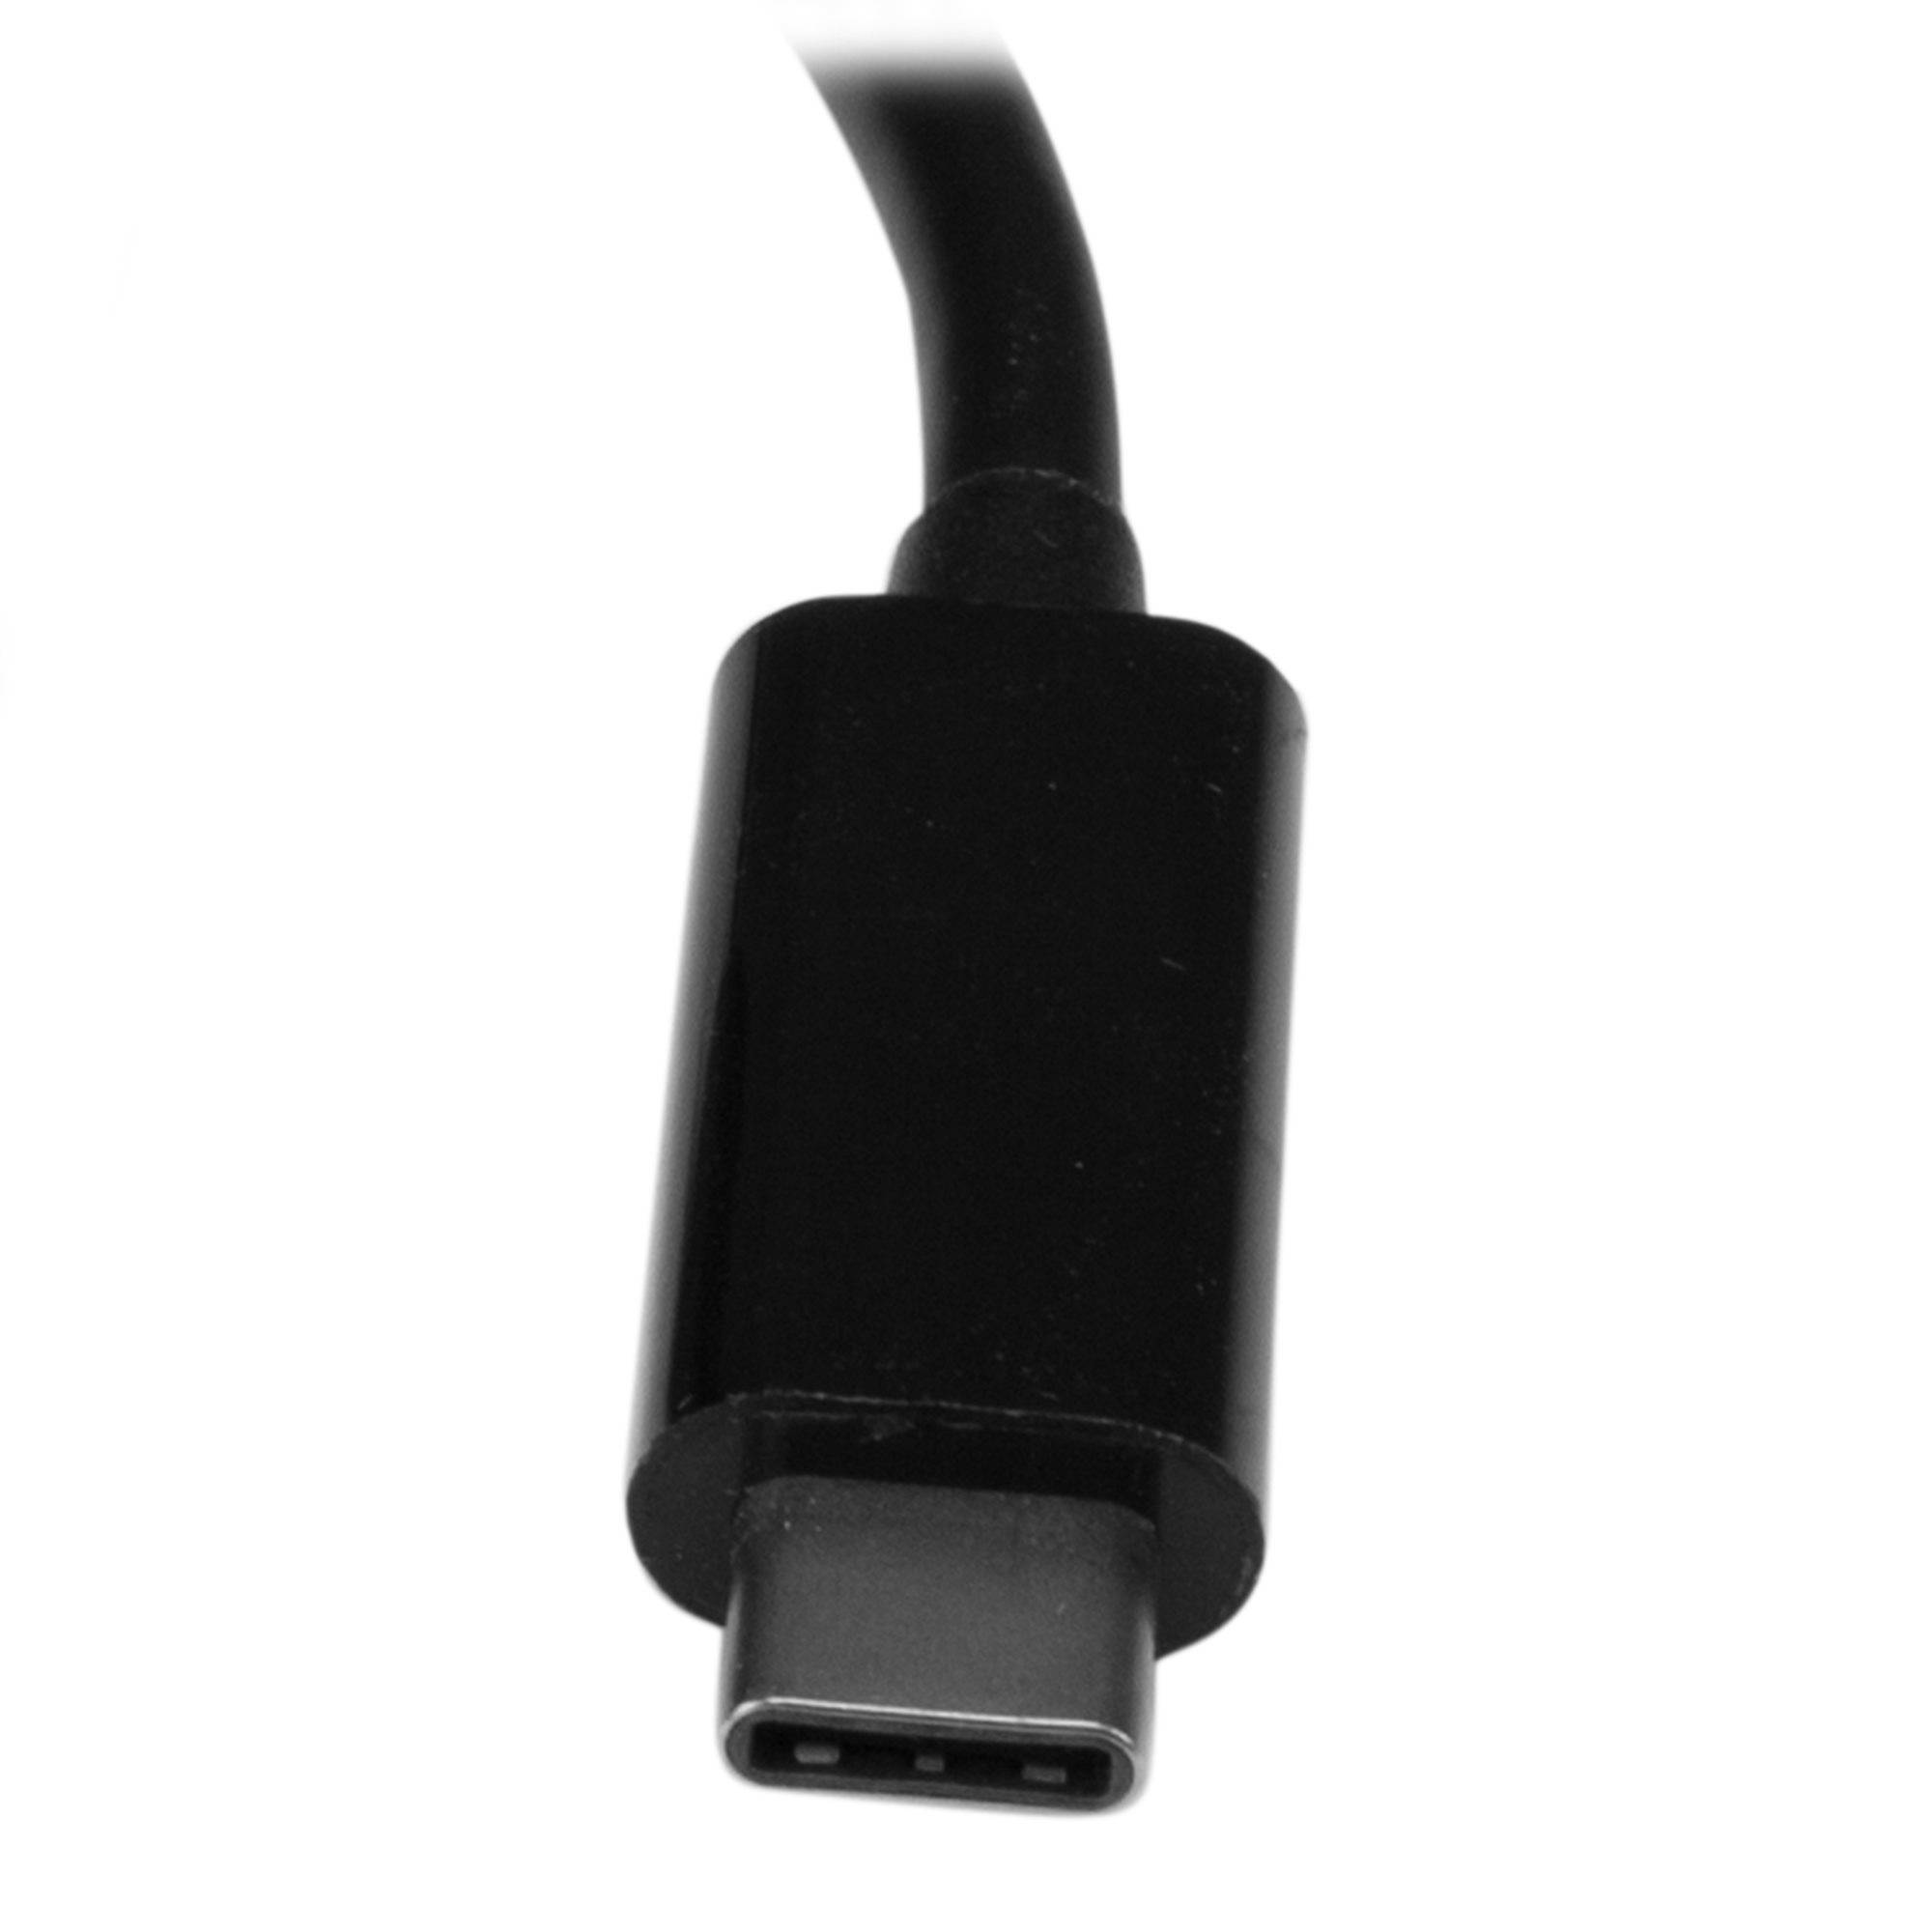 Rca Informatique - image du produit : ADAPTATEUR USB-C VERS GBE AVEC HUB USB 3.0 A 3 PORTS AVEC PD